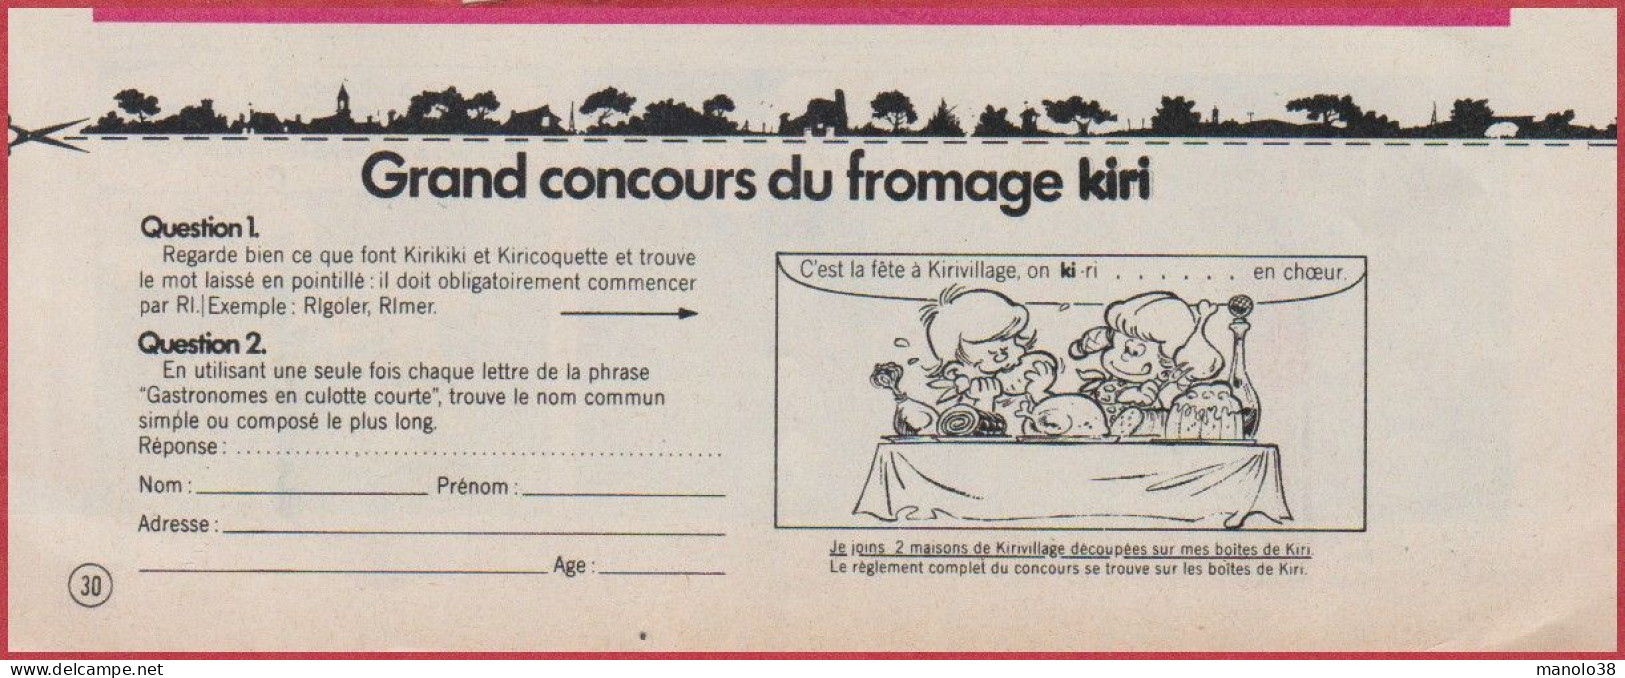 Kiri Présente Les Exploits De Kirikiki Et Kiricoquette. BD. Bande Dessinée De Roba. Concours. Fromage. 1975. - Publicités